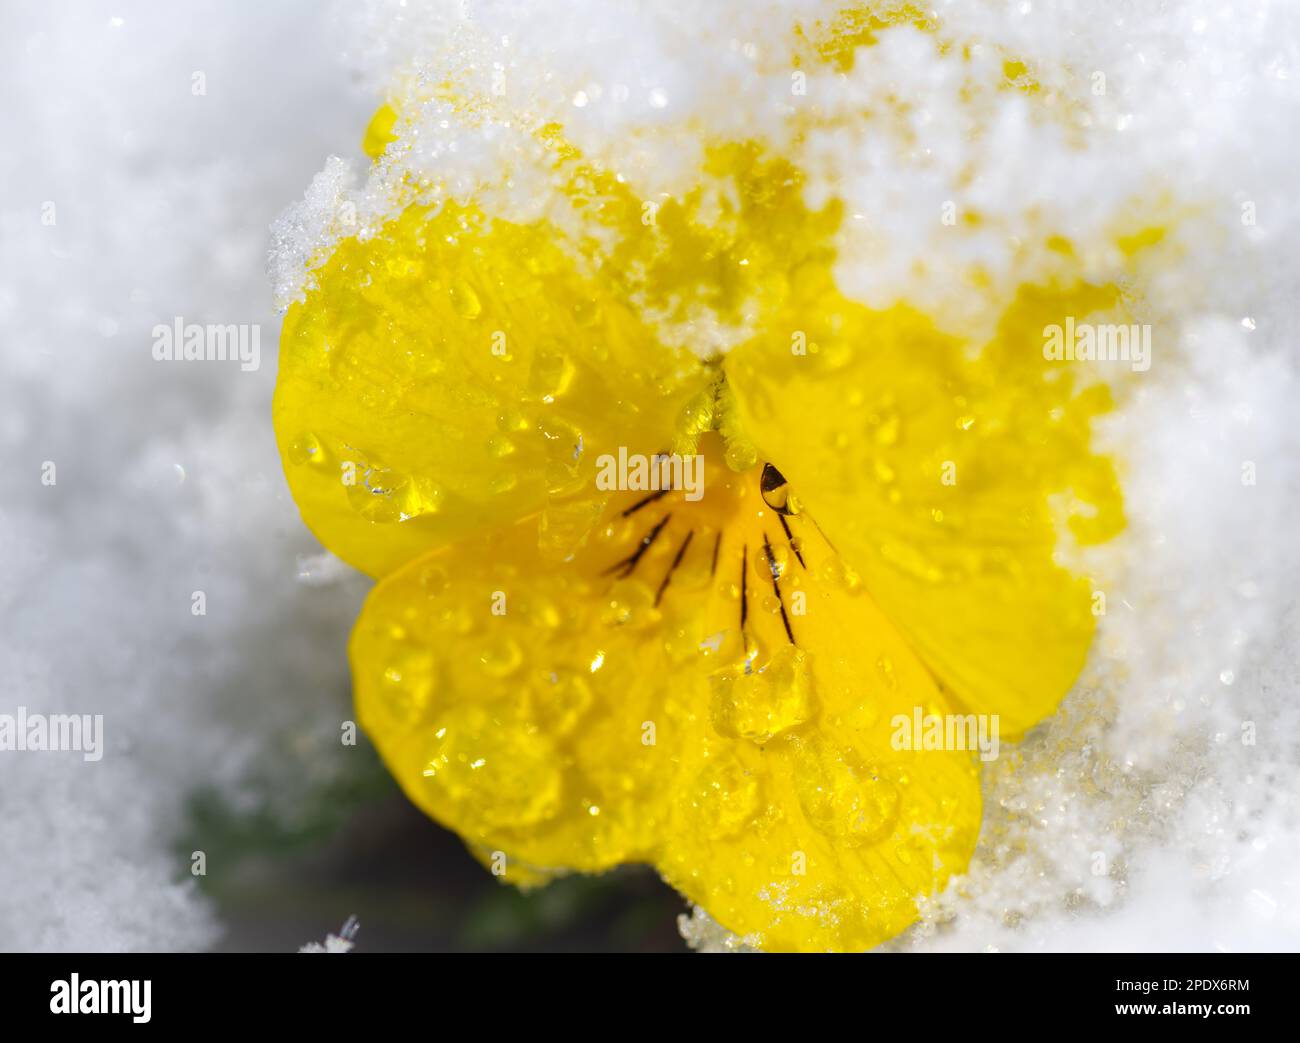 gros plan d'une fleur de pansy jaune en fleurs recouverte de neige Banque D'Images